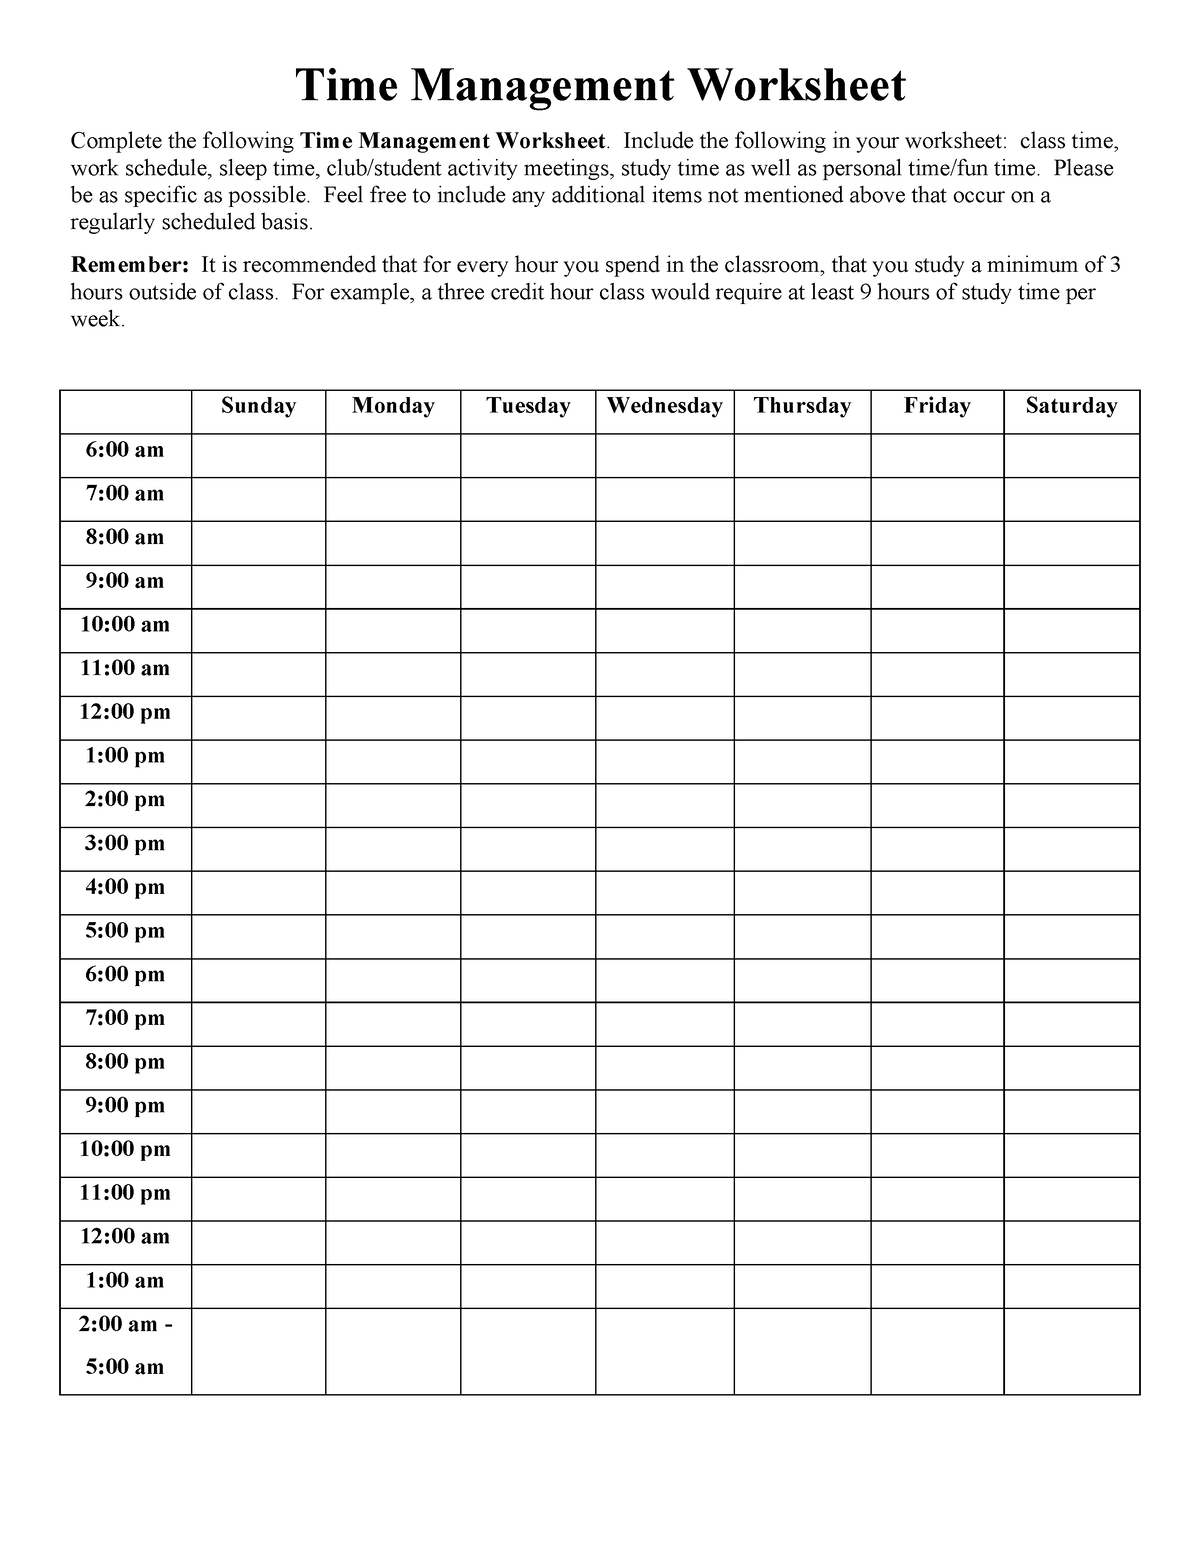 Time management worksheet.pdf sk - Time Management Worksheet Complete ...